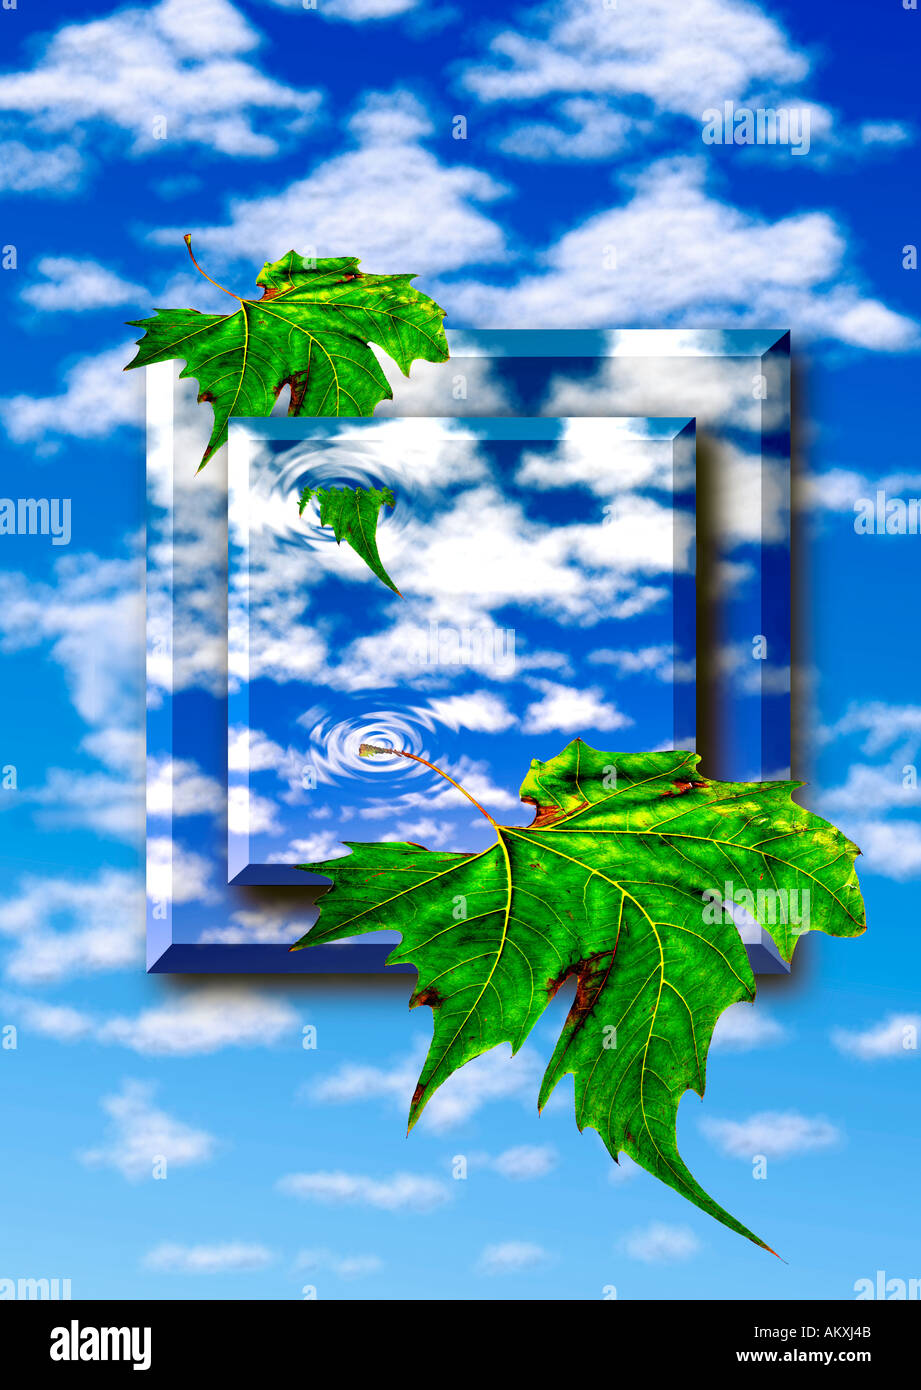 Blätter fallen gegen blauen Himmel Hintergrund blauer Himmel Wolken flauschige ändern Sommer Konzept abstrakten Foto illustration Stockfoto